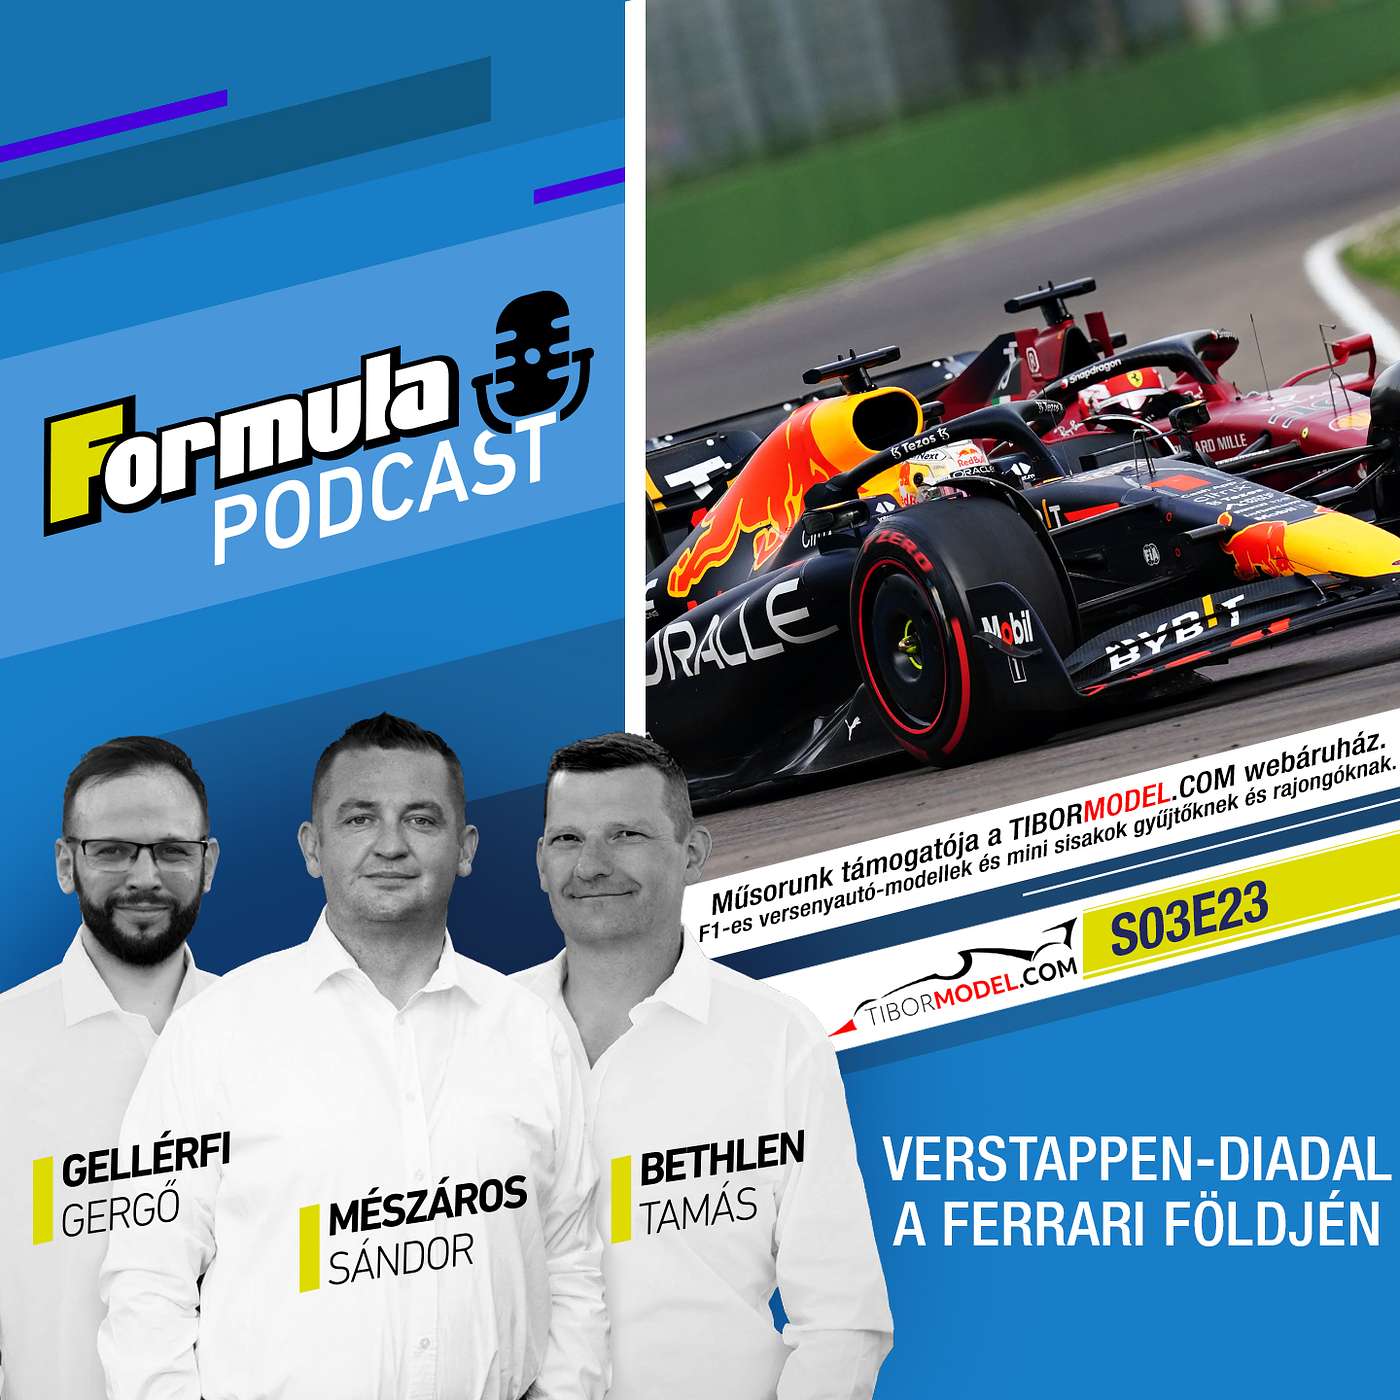 S03EP23 – Verstappen-diadal a Ferrari földjén